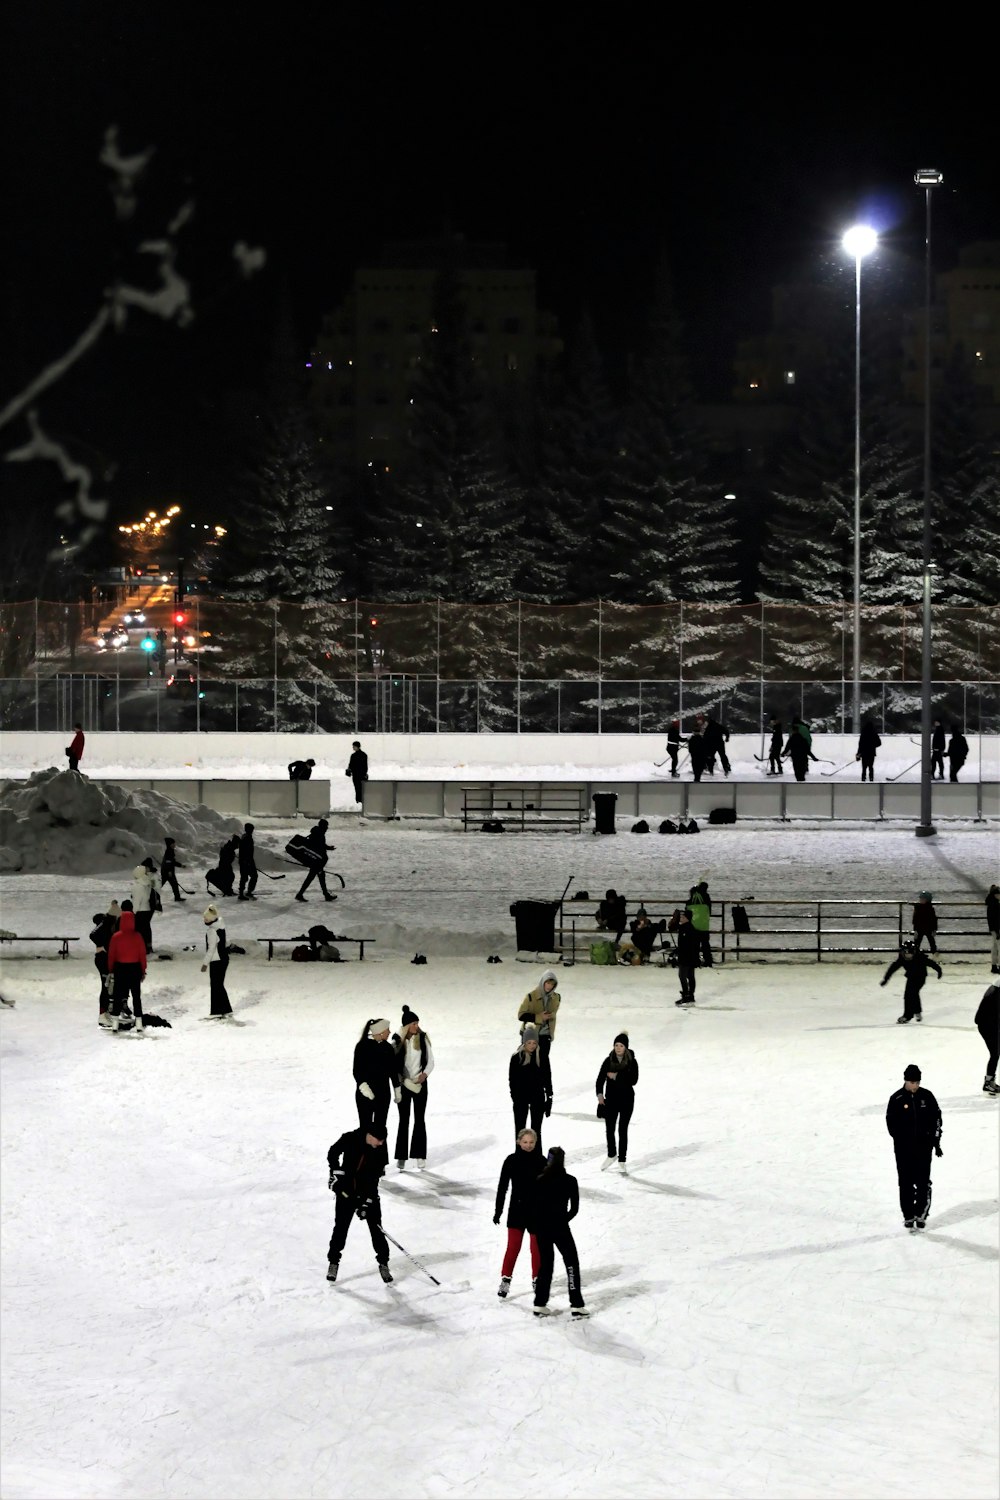 Personas jugando al hockey sobre hielo durante la noche